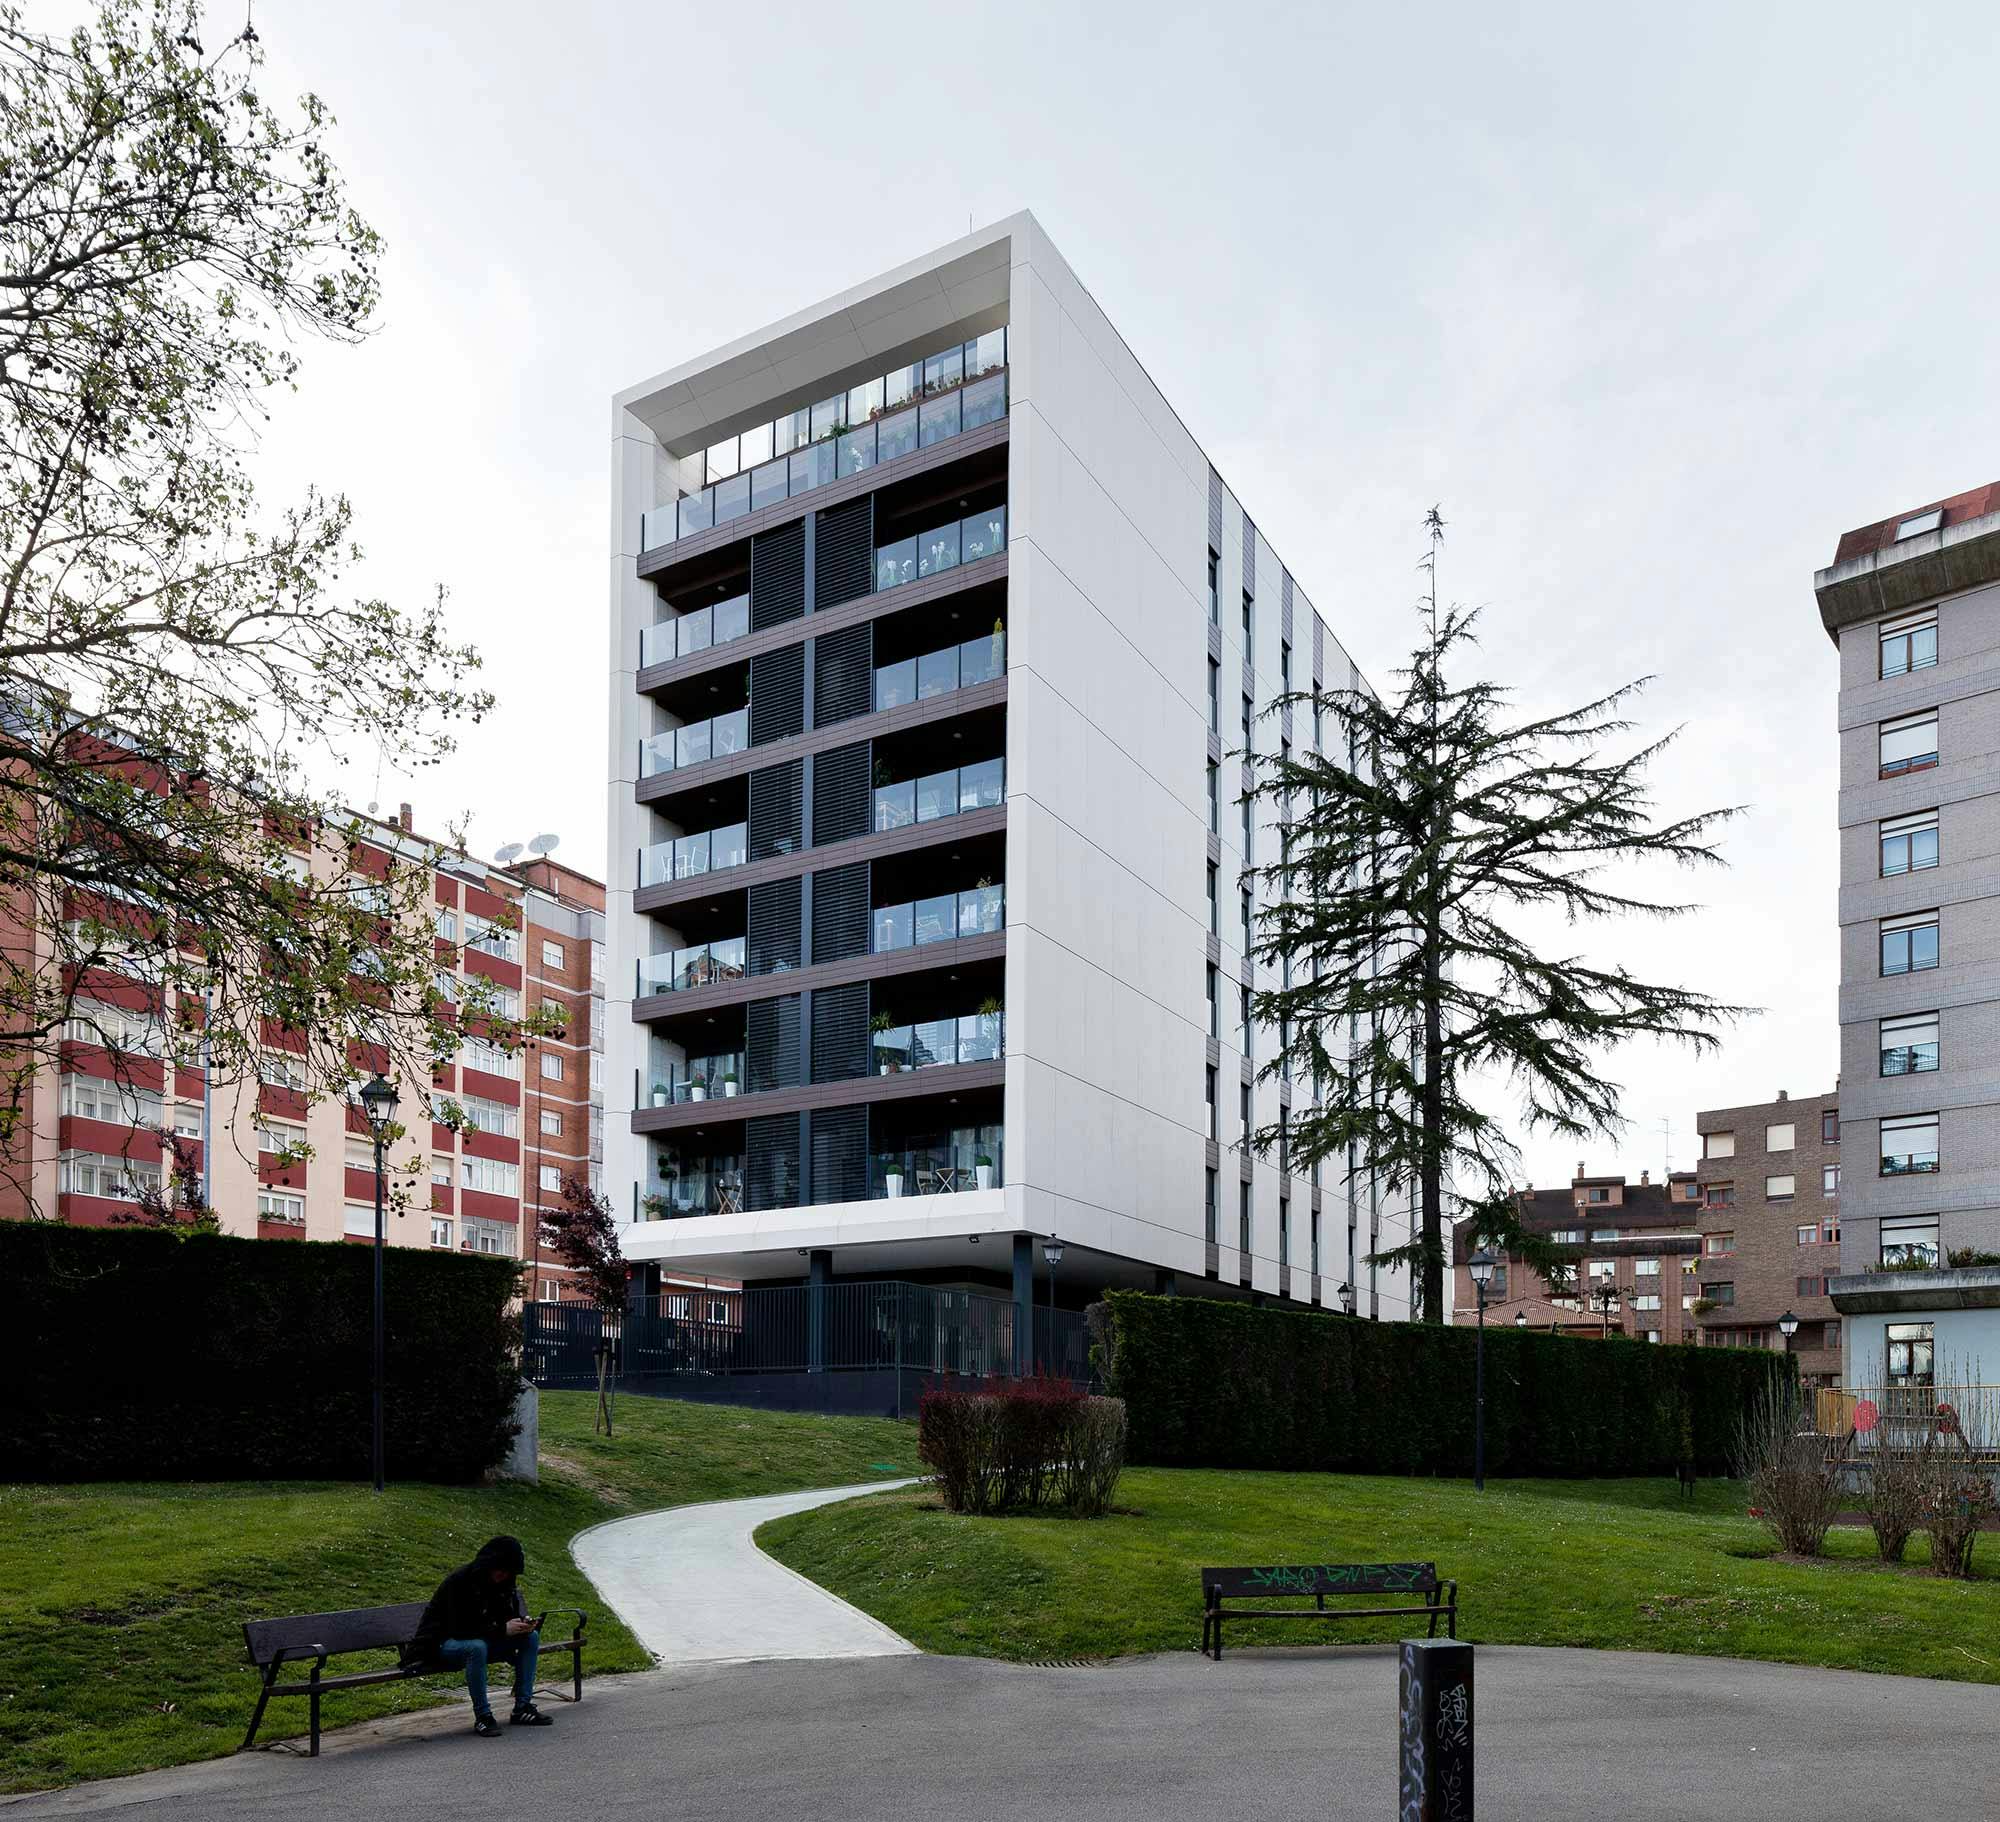 Numero immagine 36 della sezione corrente di Functional homes that blend in with their surroundings thanks to Dekton and Silestone di Cosentino Italia